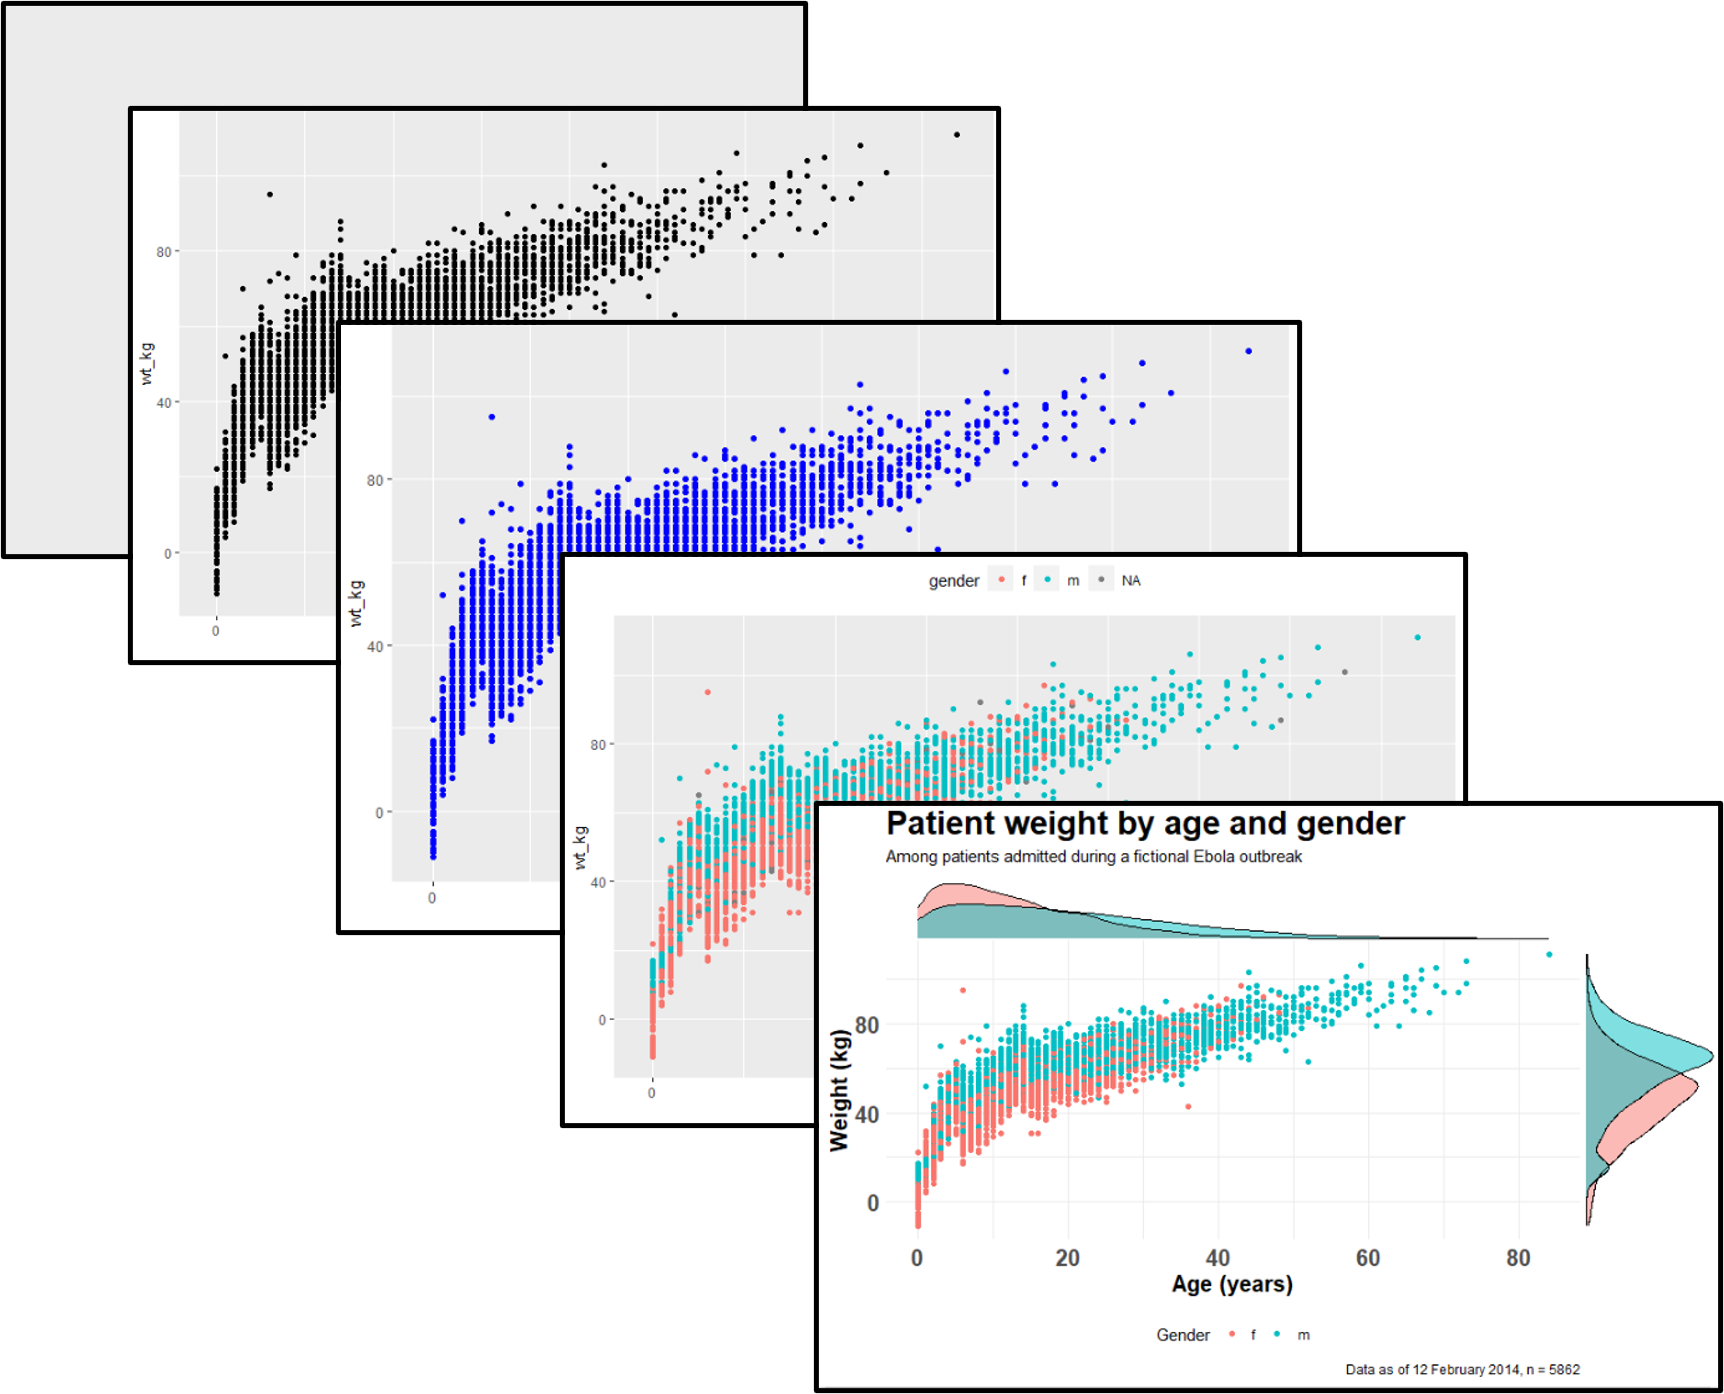 ggplot: Nếu bạn là một người yêu thích visualisation và dữ liệu, hãy cùng xem những hình ảnh về ggplot - một thư viện hữu ích trong R để biểu đồ hóa dữ liệu một cách đẹp mắt và chuyên nghiệp. Bạn sẽ không chỉ được tìm hiểu thêm về ggplot, mà còn tìm thấy được những cách thức mới để biểu diễn dữ liệu của bạn.